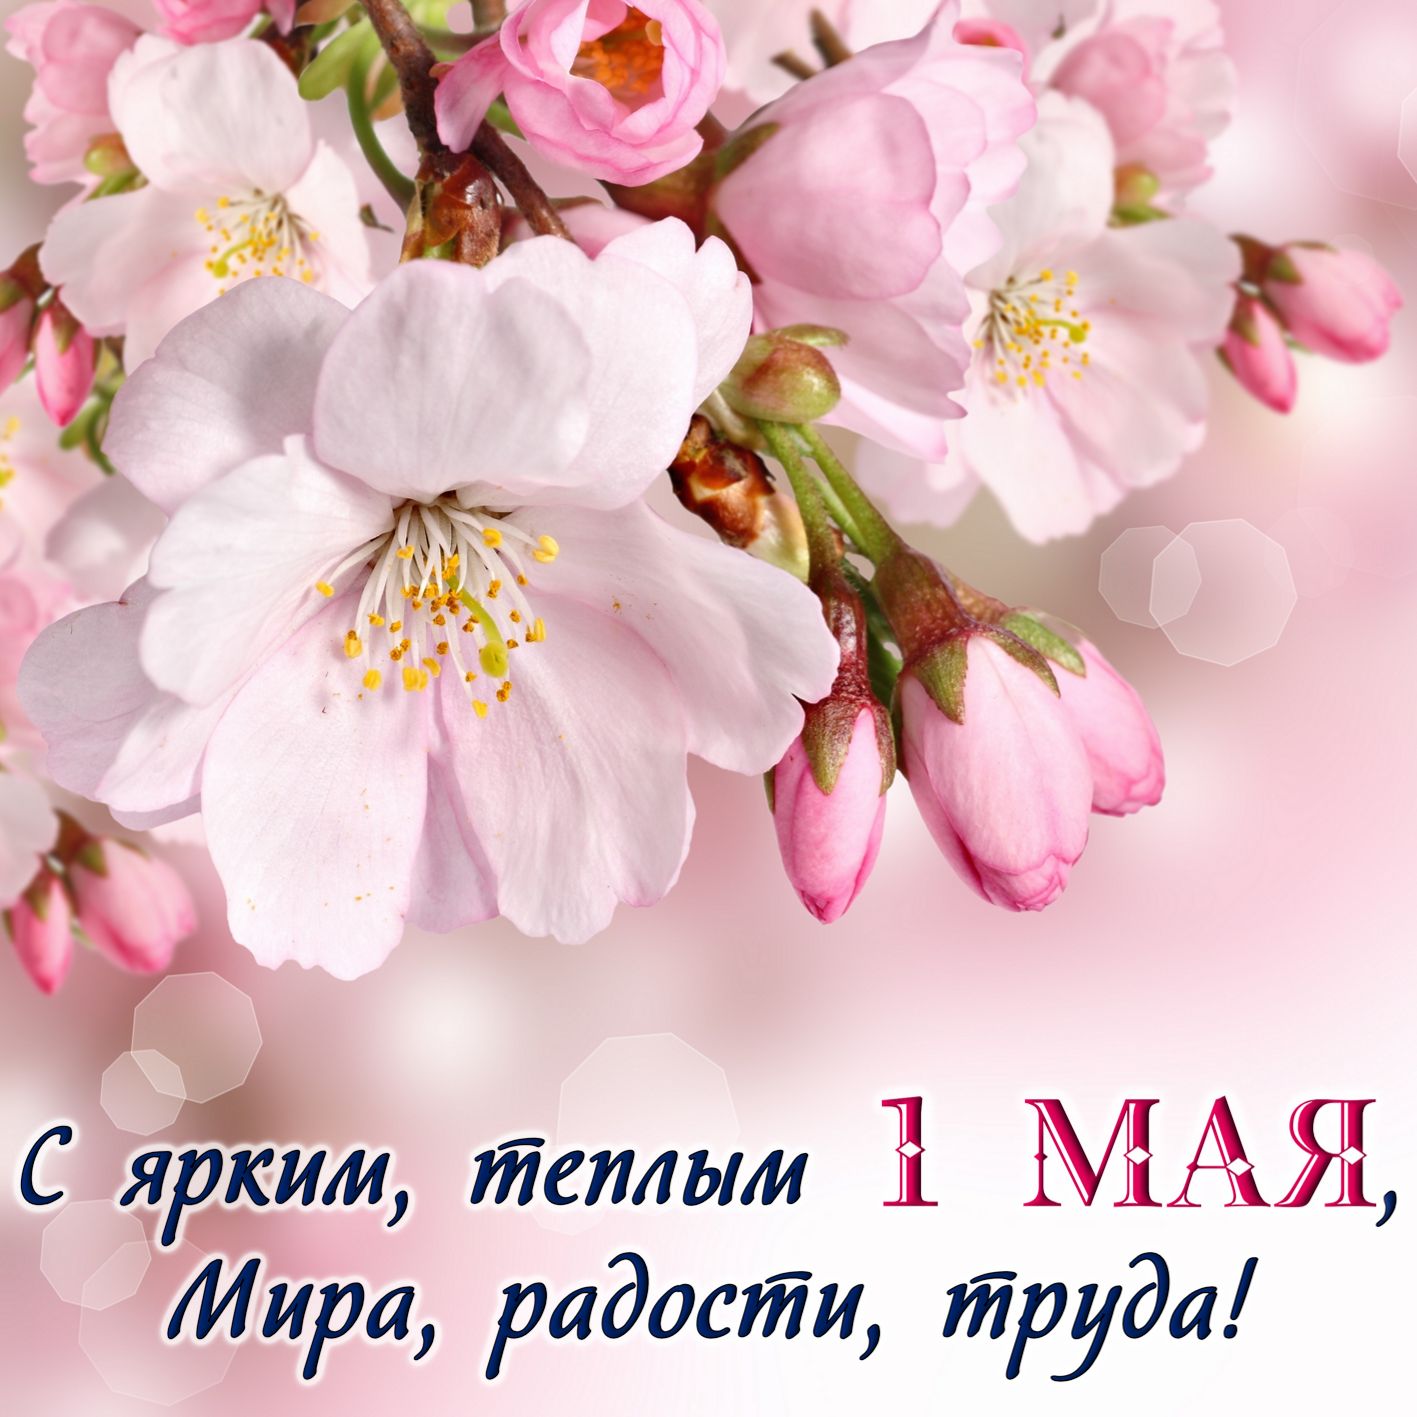 Нежные весенние цветы к празднику 1 Мая.